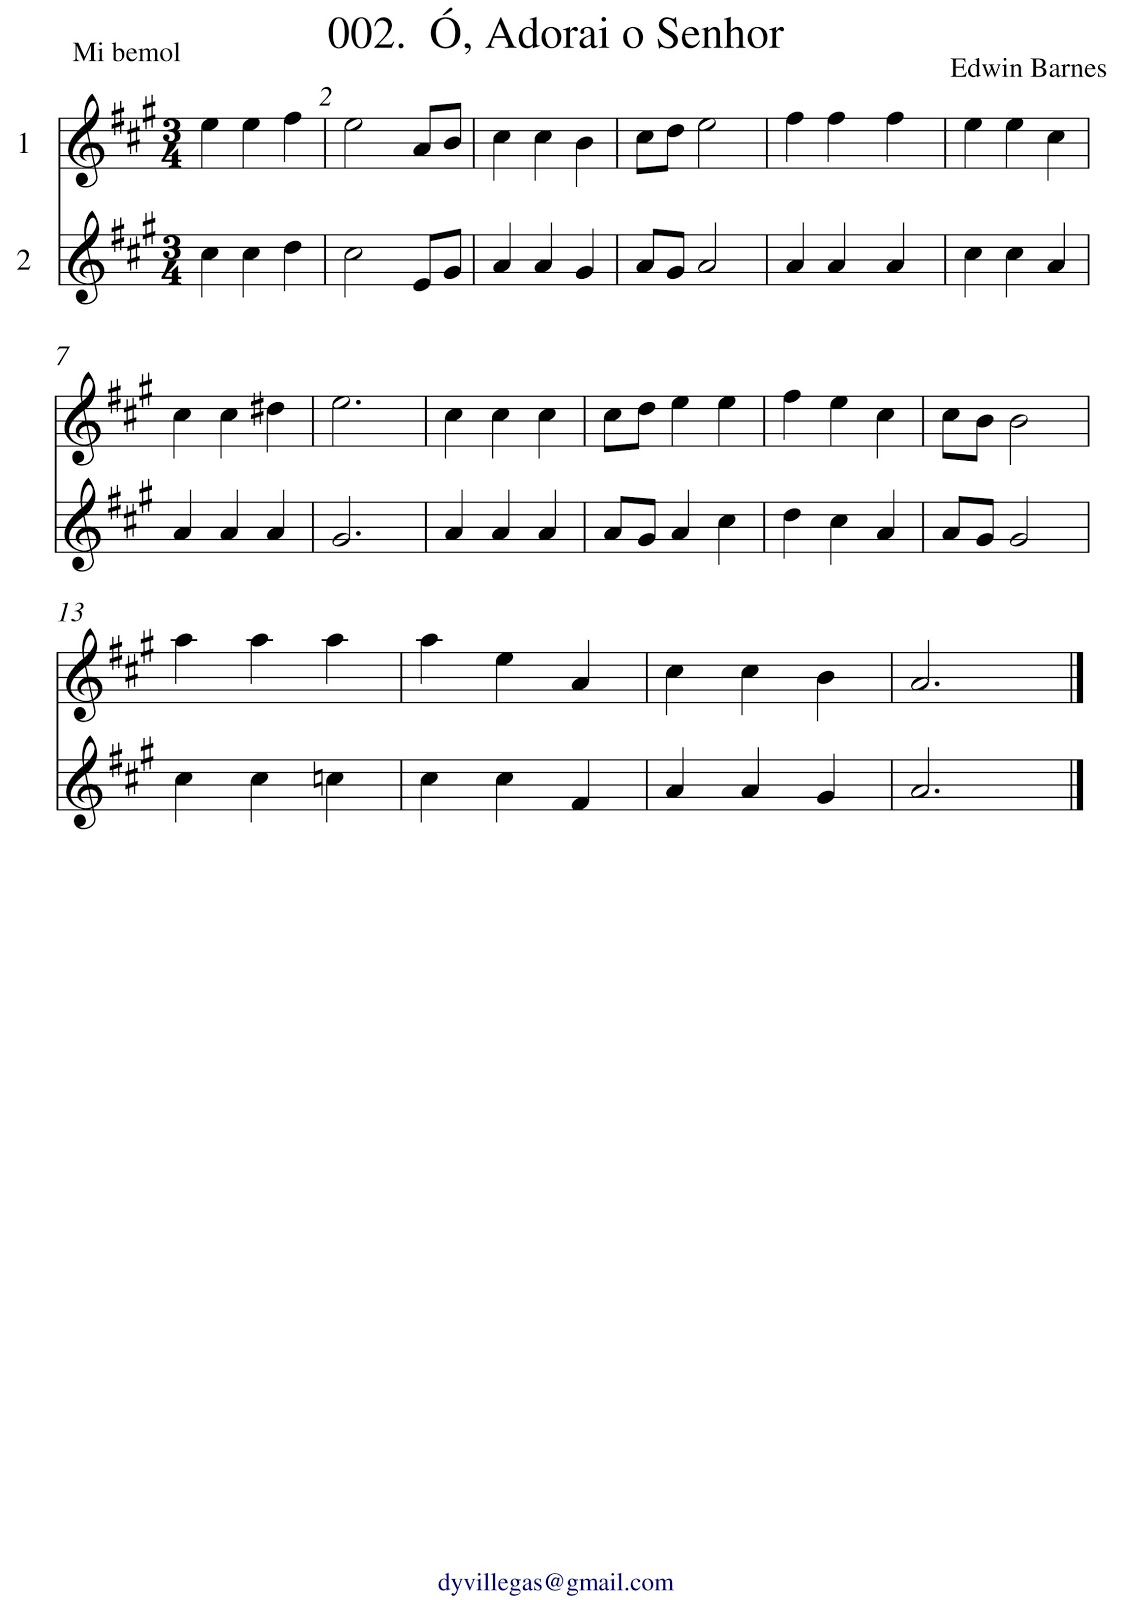 Partitura - Canção da Infantaria (Saxofone Alto em Mib) 